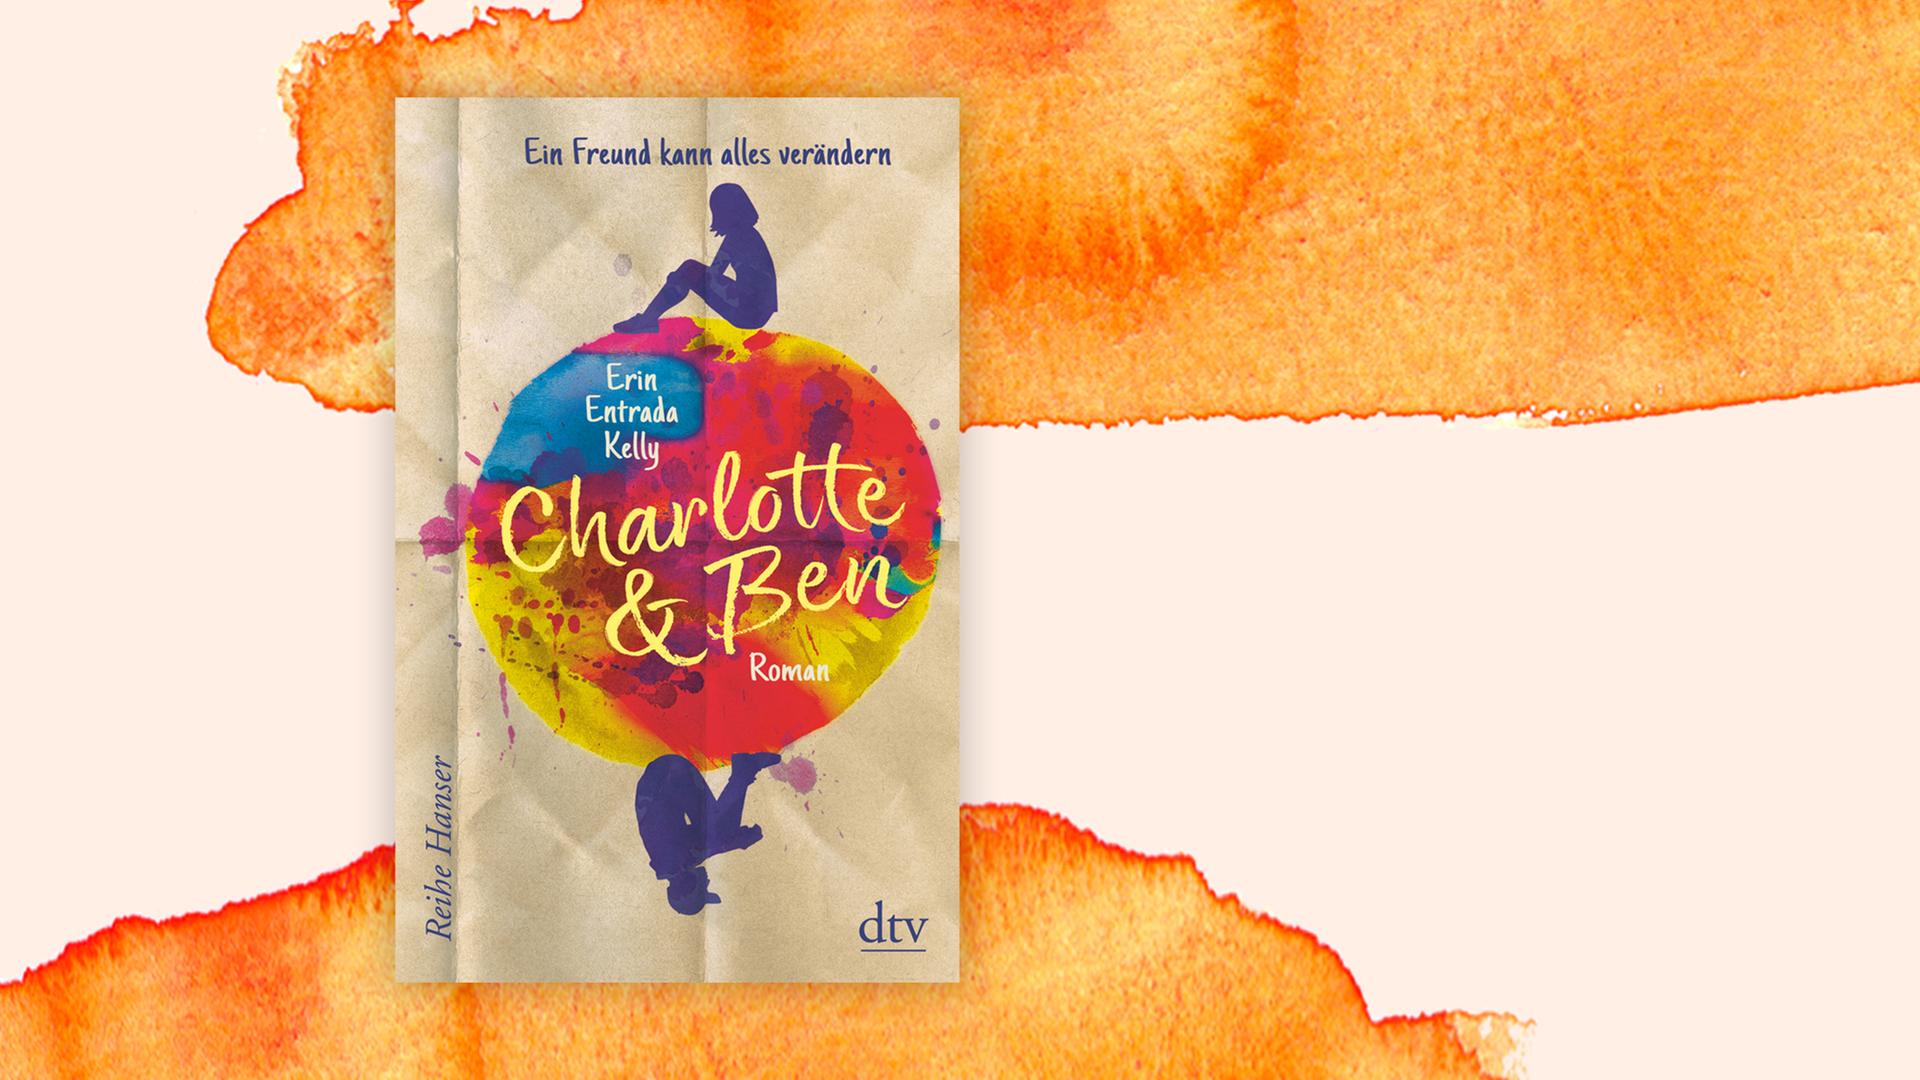 Das Cover von Erin Entrada Kellys “Charlotte & Ben” vor Deutschlandfunk Kultur Hintergrund.